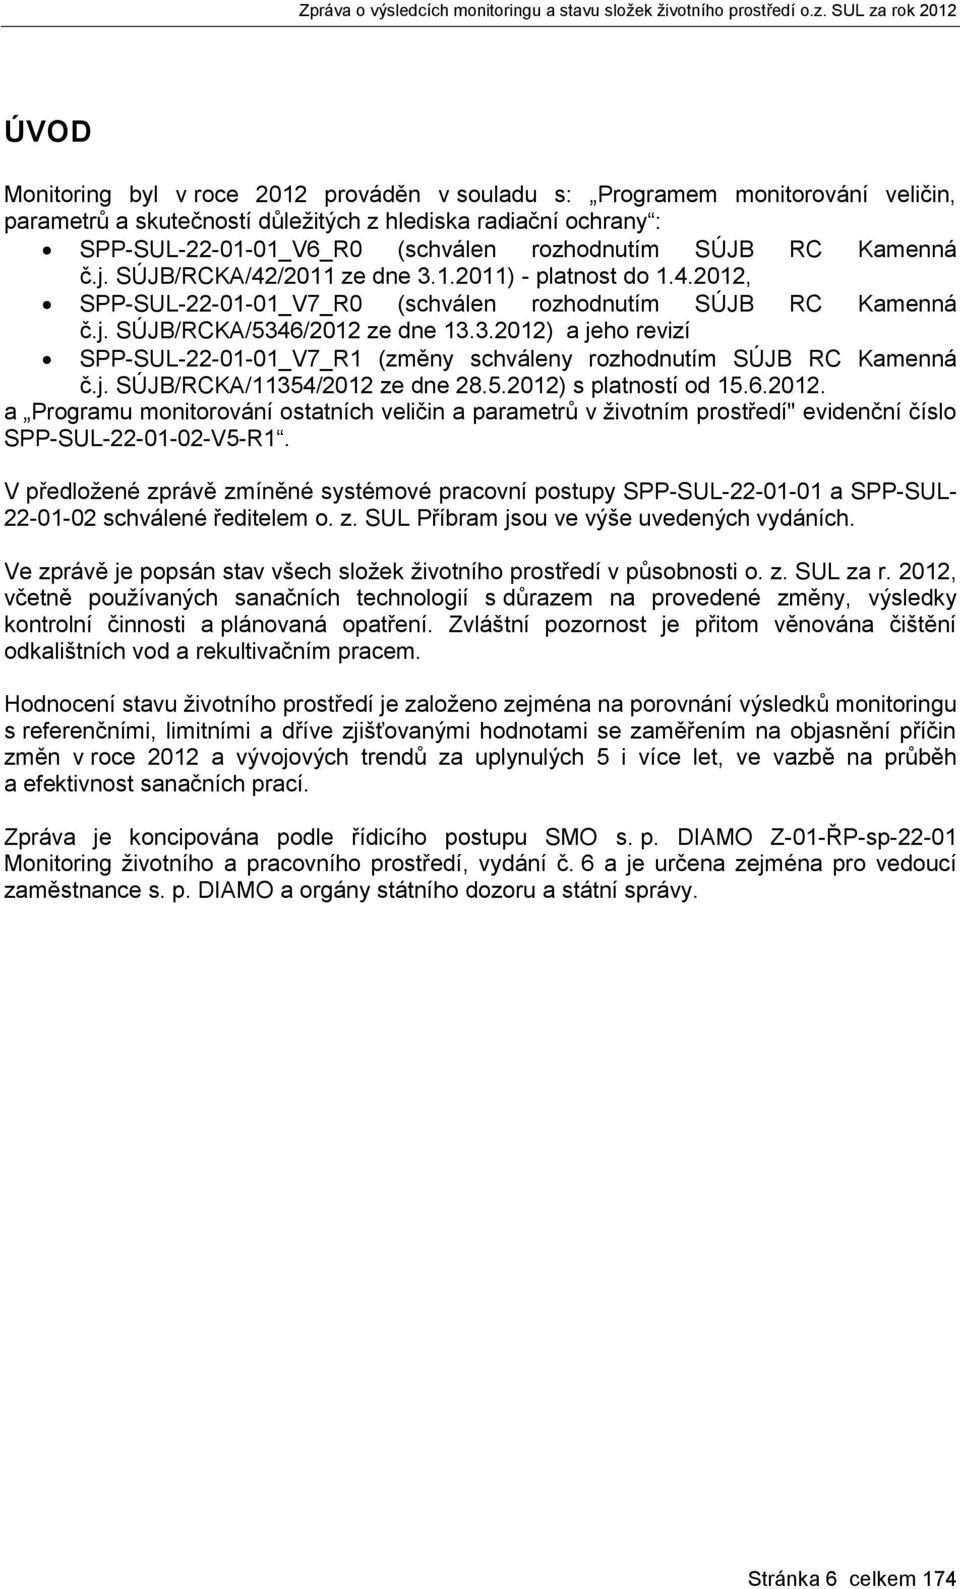 j. SÚJB/RCKA/11354/2012 ze dne 28.5.2012) s platností od 15.6.2012. a Programu monitorování ostatních veličin a parametrů v životním prostředí" evidenční číslo SPP-SUL-22-01-02-V5-R1.